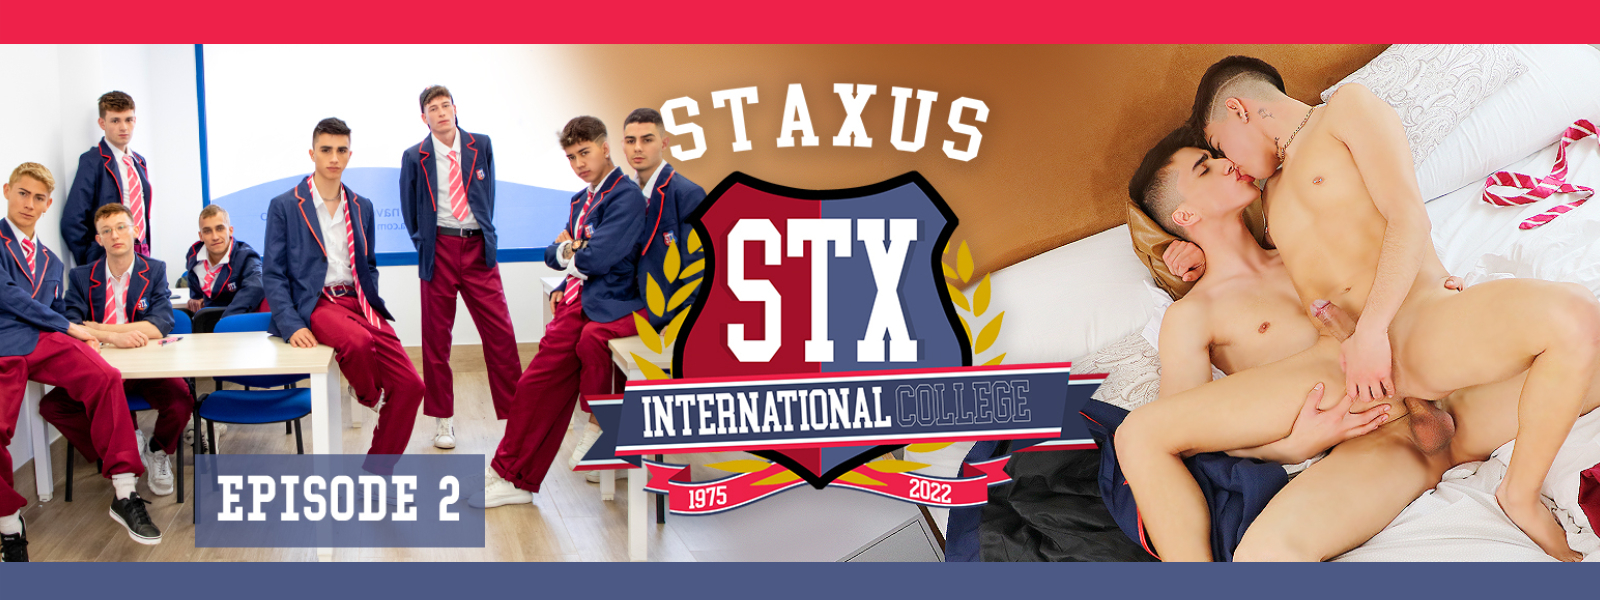 Staxus International College Episode 2